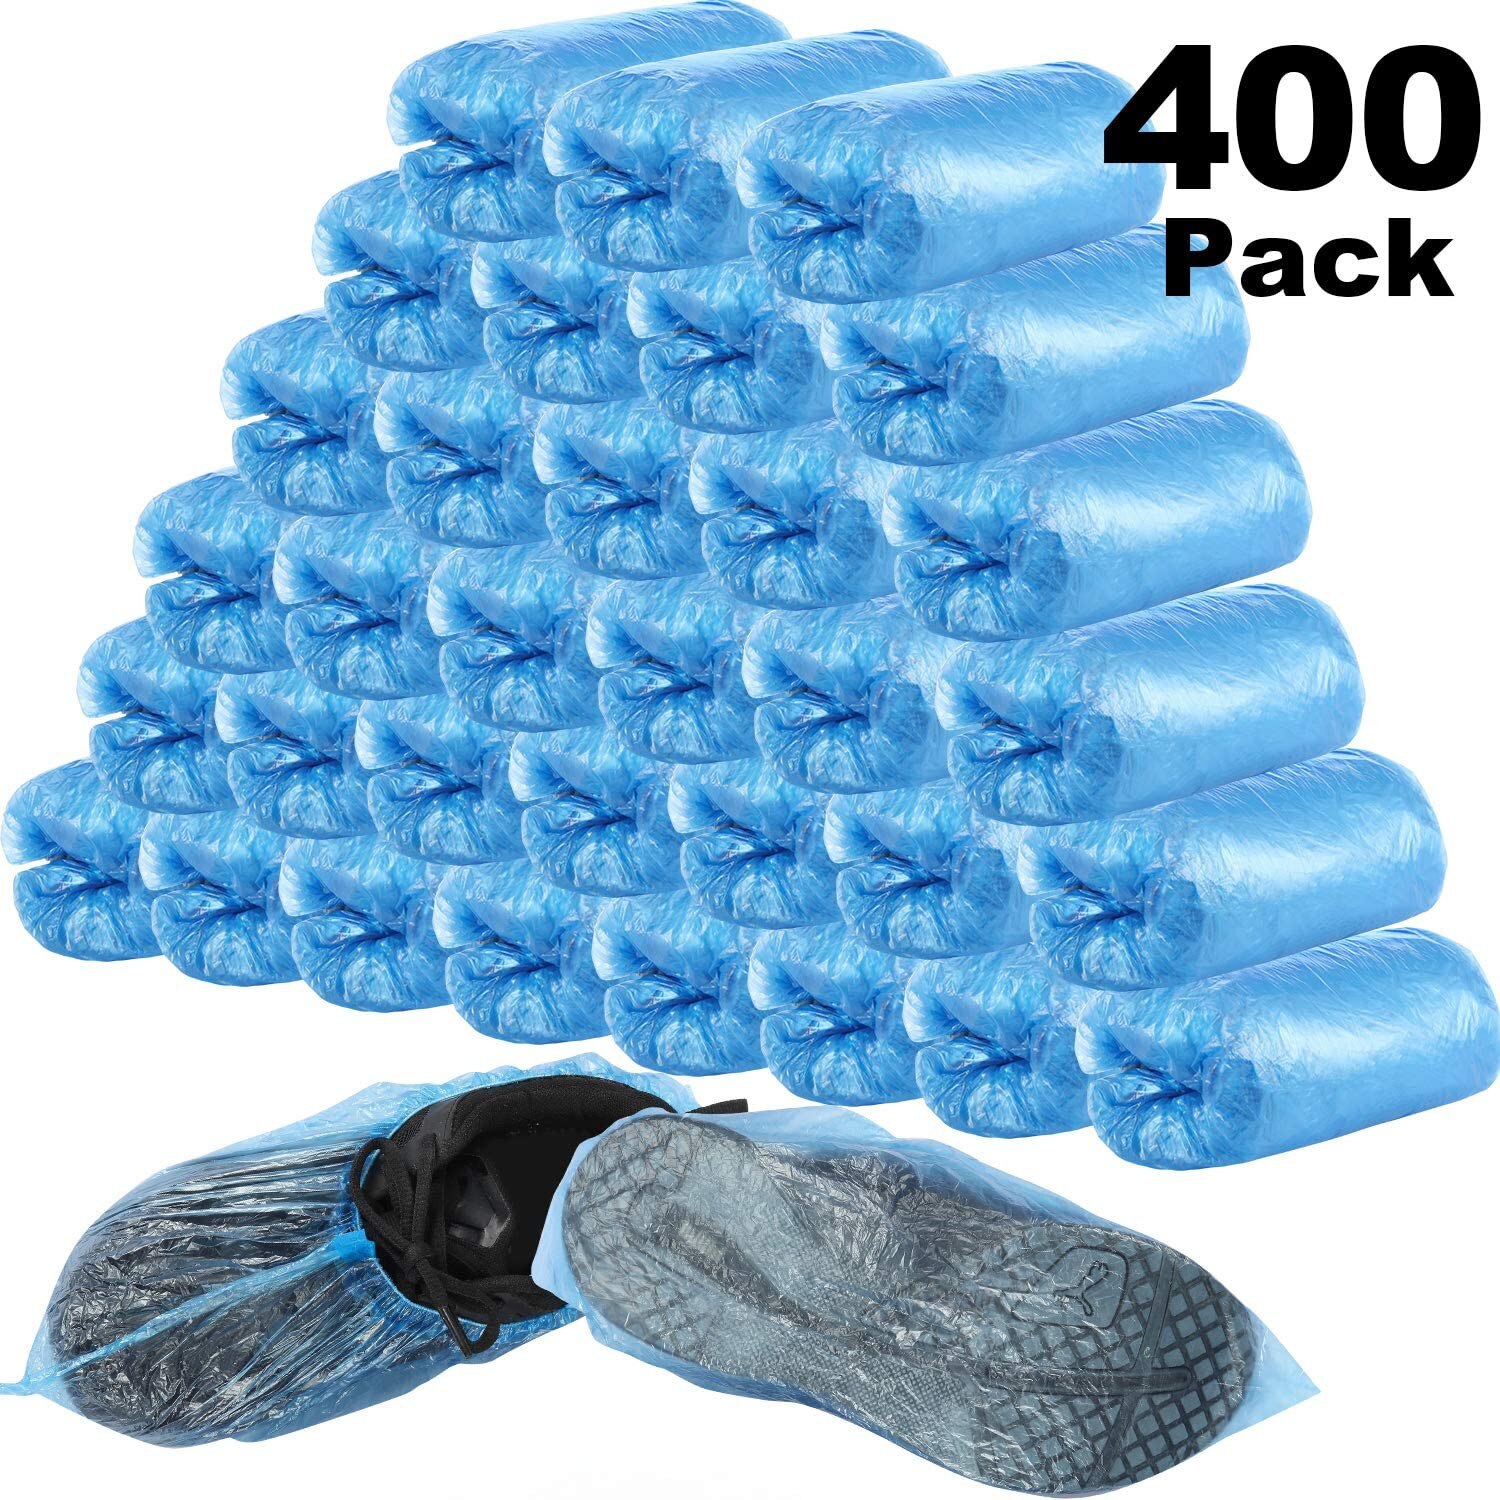 Wegwerp 200 Pack Schoen Covers Boot Cover Anti Slip Waterdicht 200 Paar Blauw Beschermende Schoen Cover Regenachtige Regen Laarzen